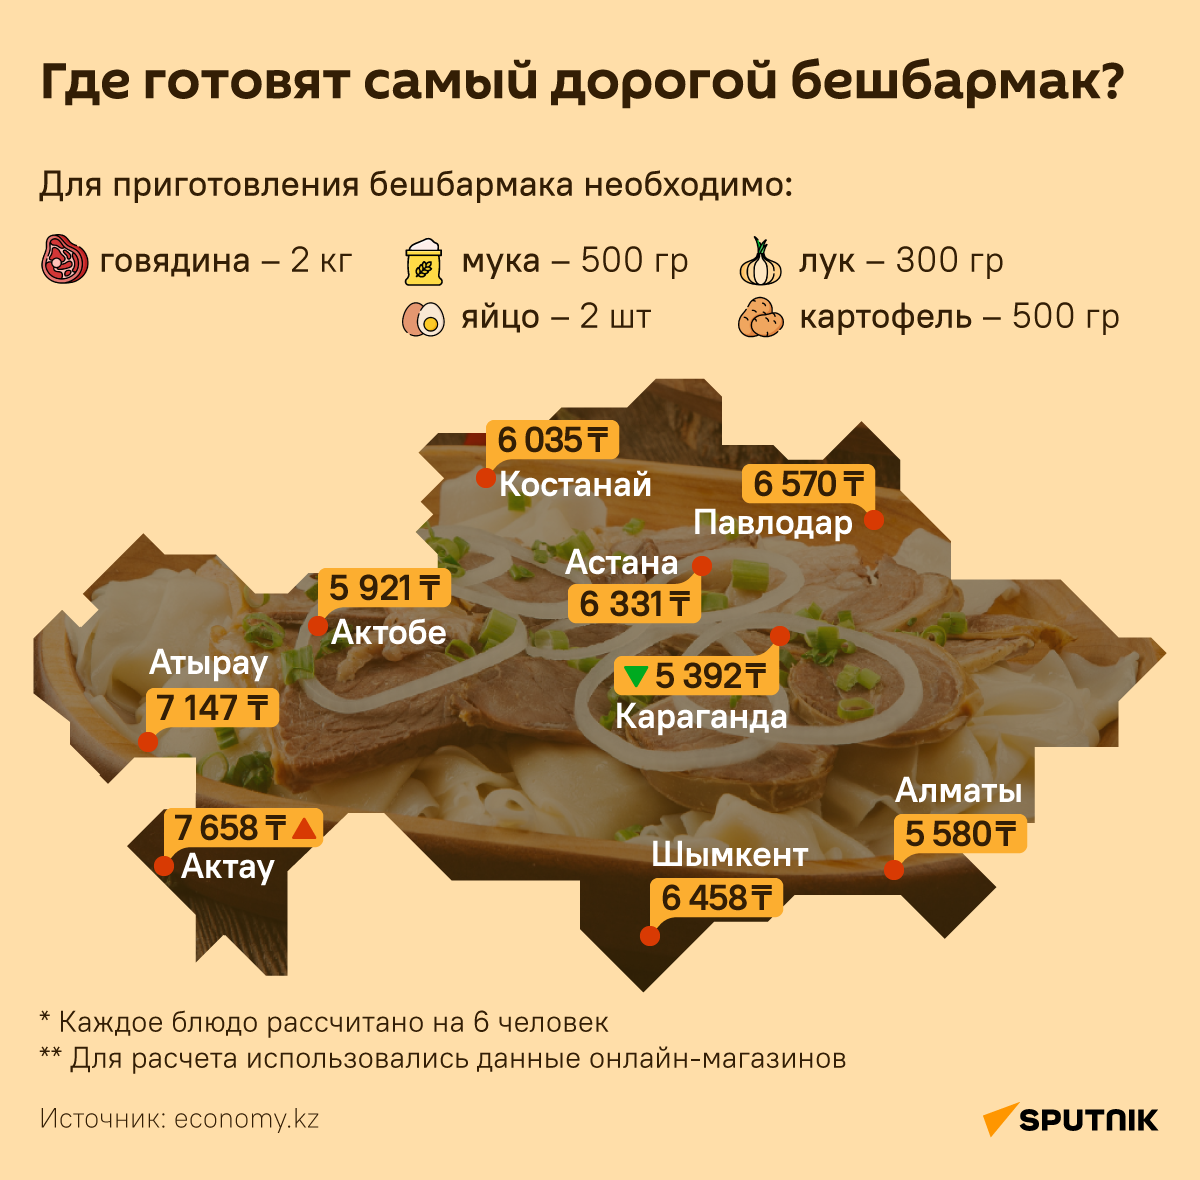 Бешбармак в Казахстане подорожал: где и насколько  - Sputnik Казахстан